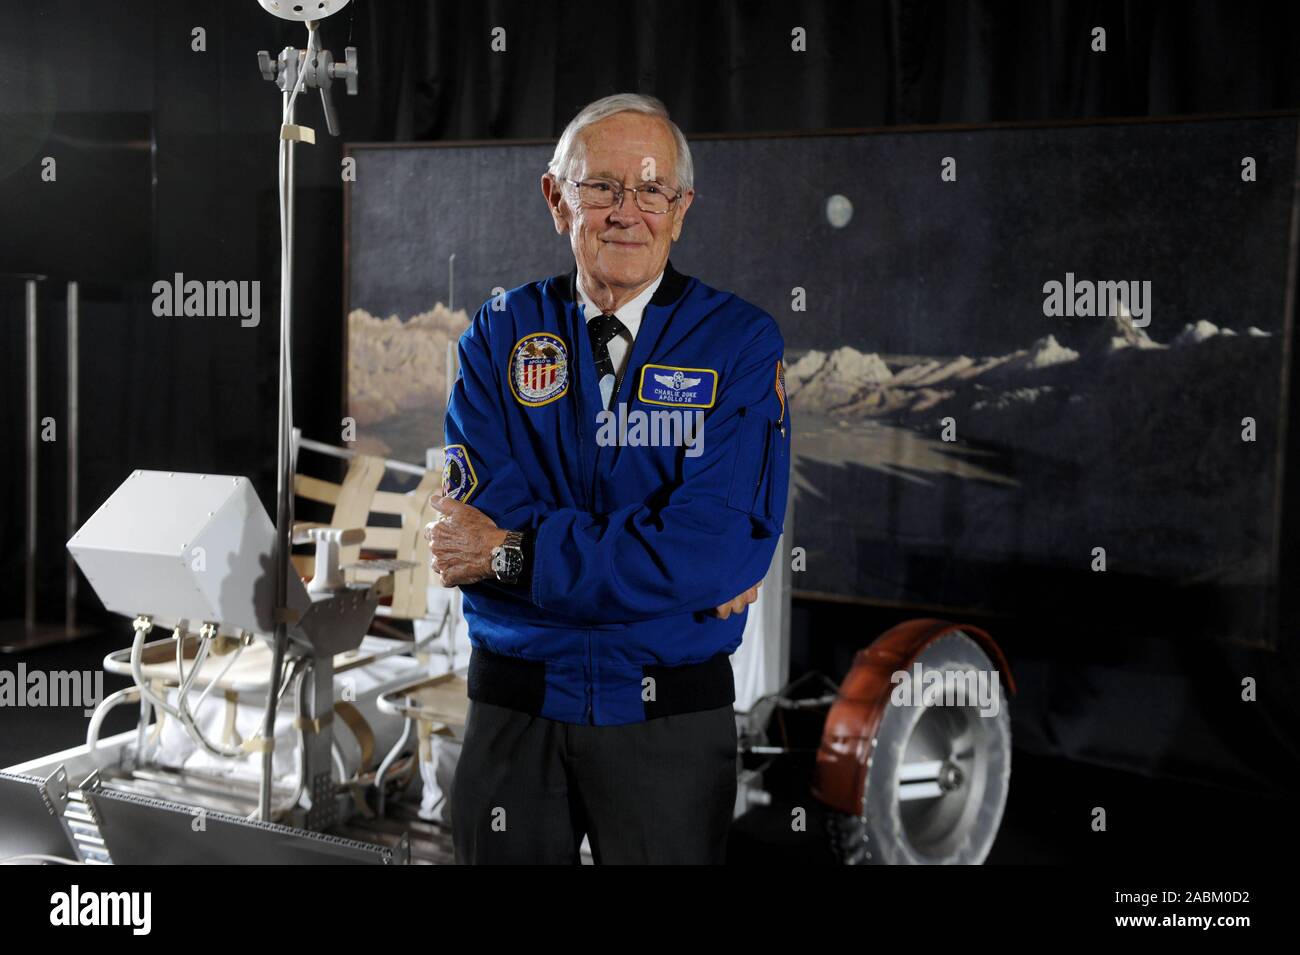 Der US-Astronaut Charles 'Charlie' Moss Herzog spricht über seine Erfahrungen im Weltraum im Deutschen Museum. Herzog pilotiert die Mondlandefähre der Apollo 16 Mission 1972 und fuhr über den Mond mit dem Auto nach der Landung. Das Bild zeigt die jüngste Moonwalker mit einer Replik eines Rover. [Automatisierte Übersetzung] Stockfoto